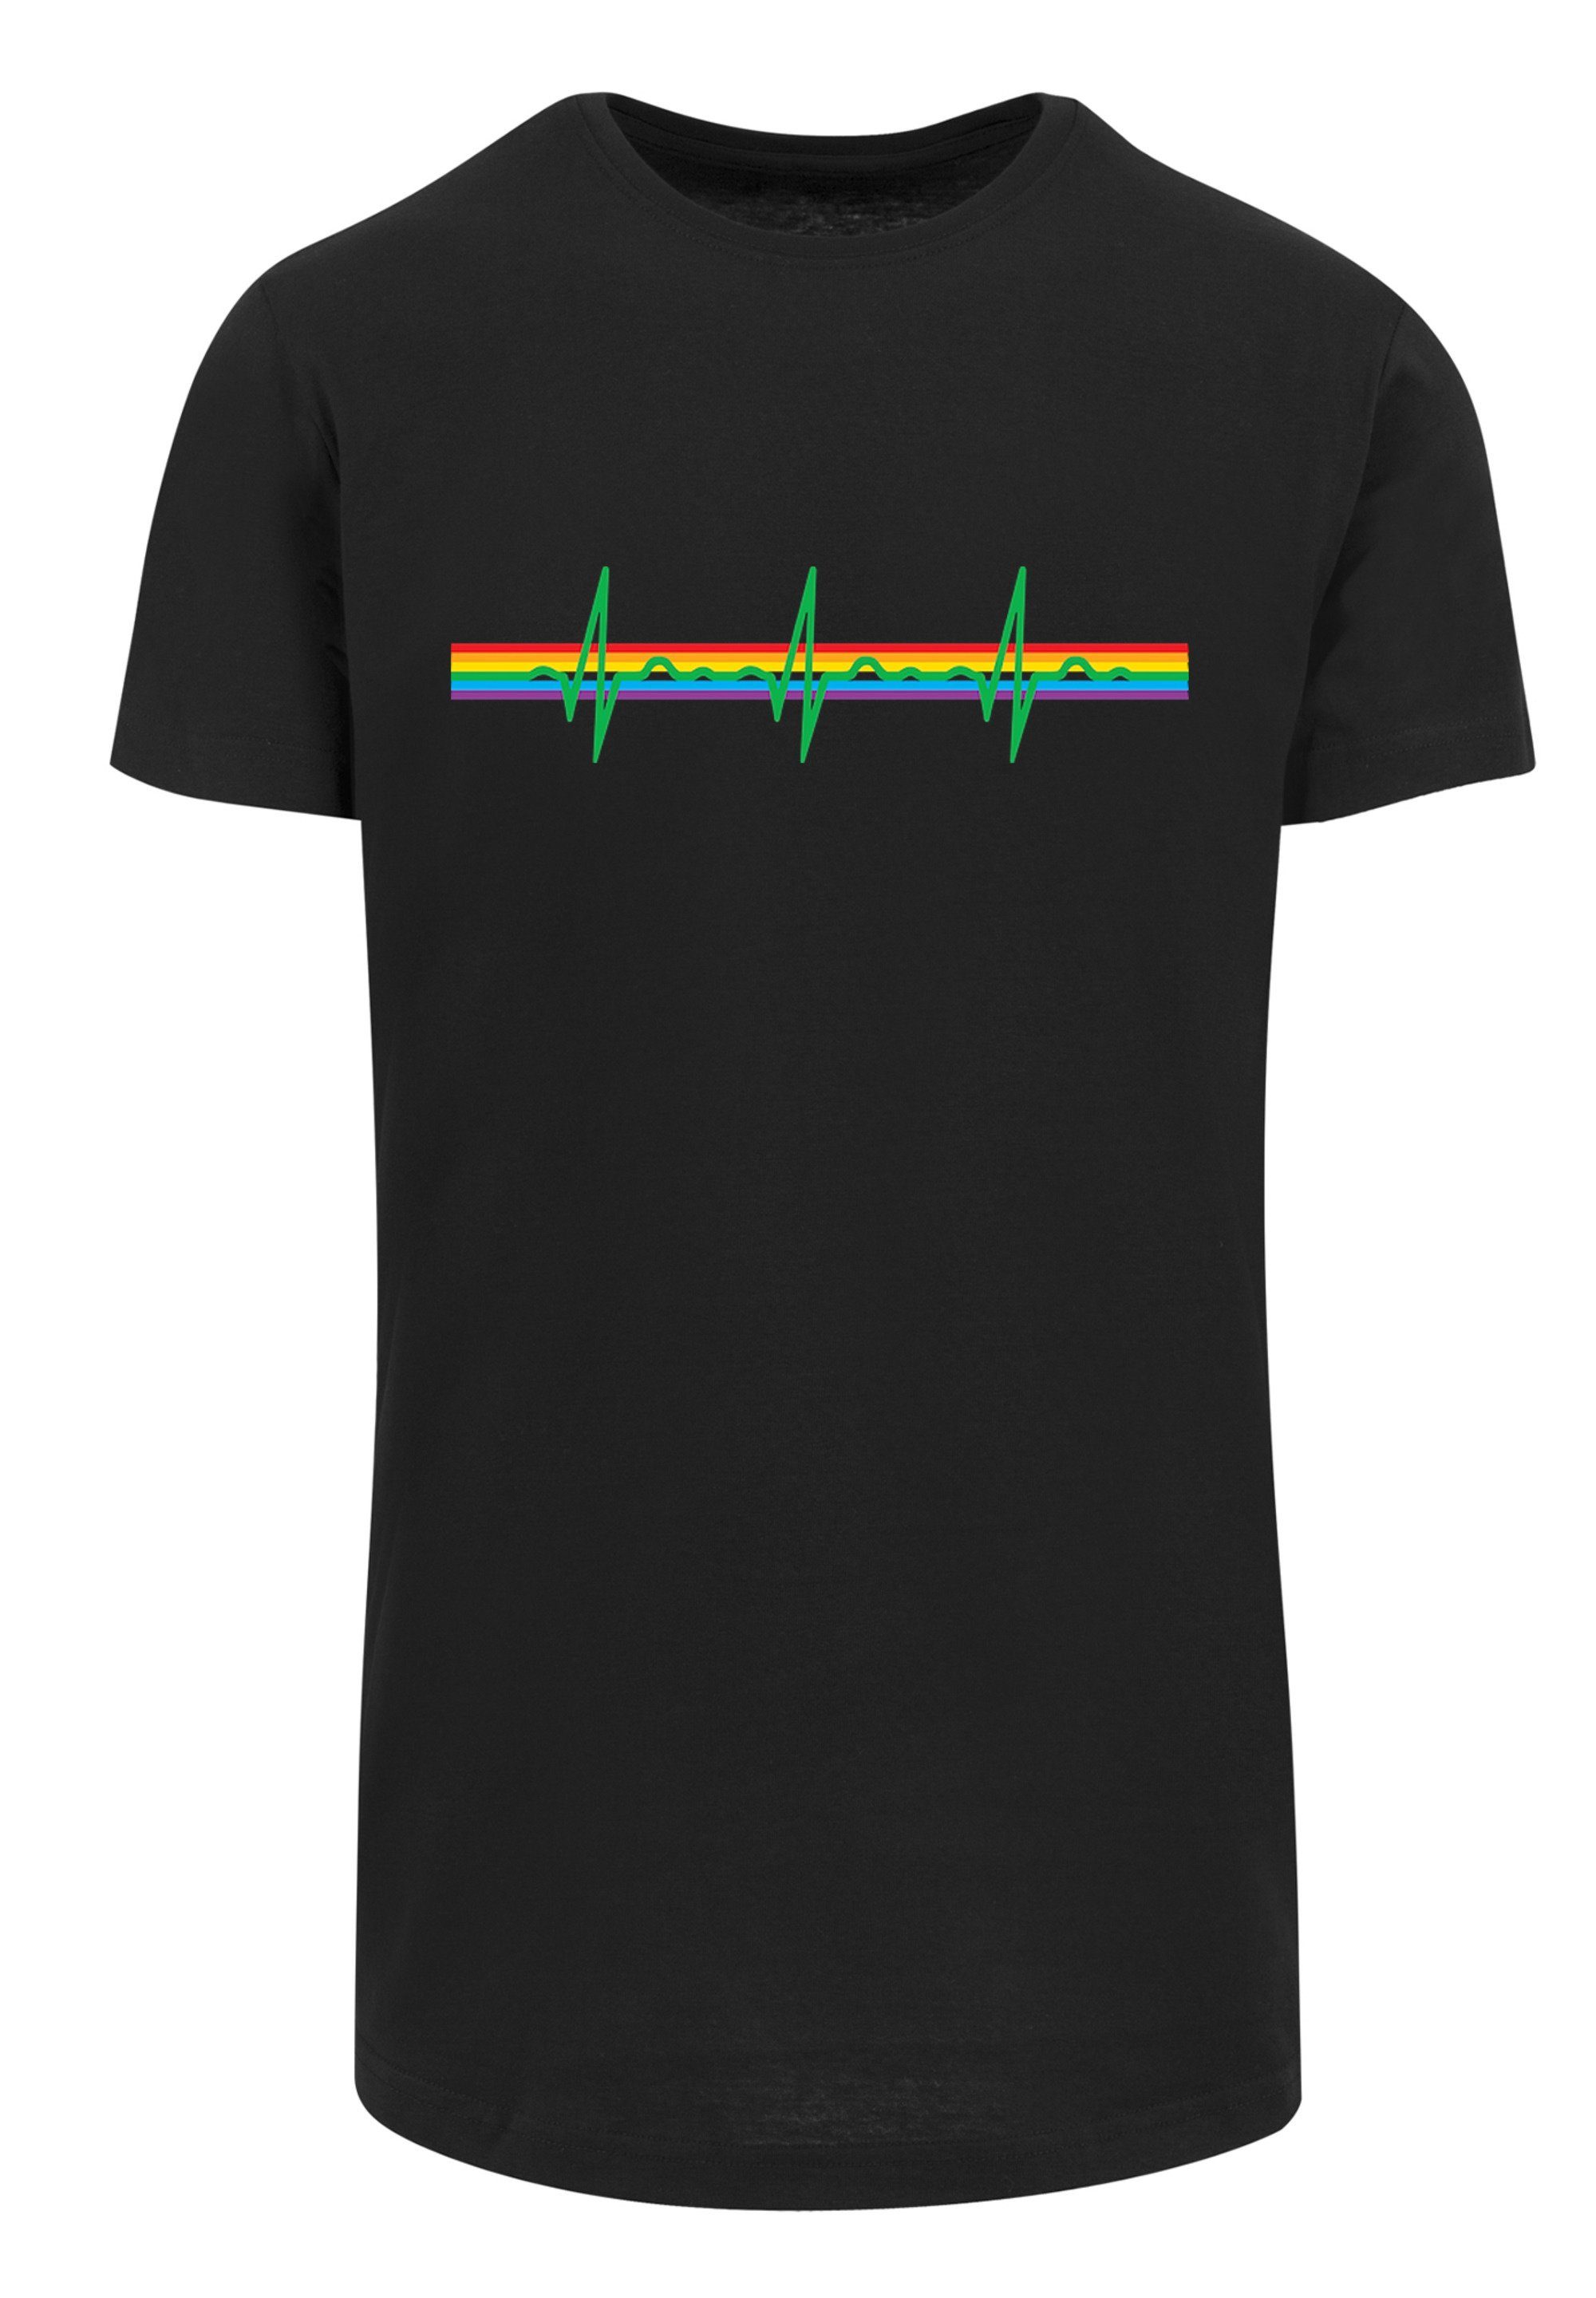 Herren Shirts F4NT4STIC T-Shirt Long Cut T-Shirt Pink Floyd Prism Heartbeat Rainbow Regenbogen